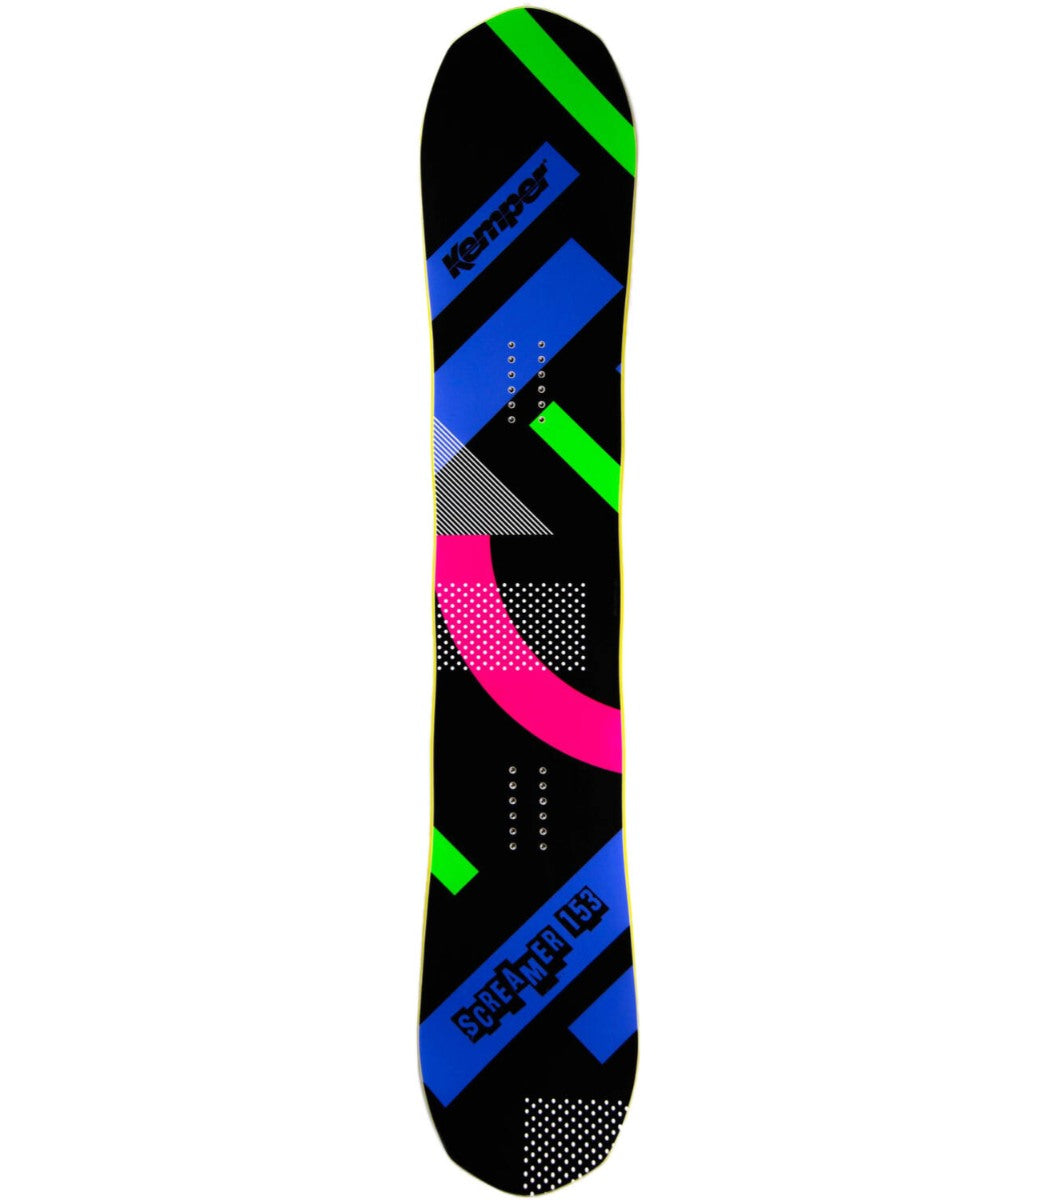 Billede af Kemper Screamer 2021/22 Snowboard - 153 cm